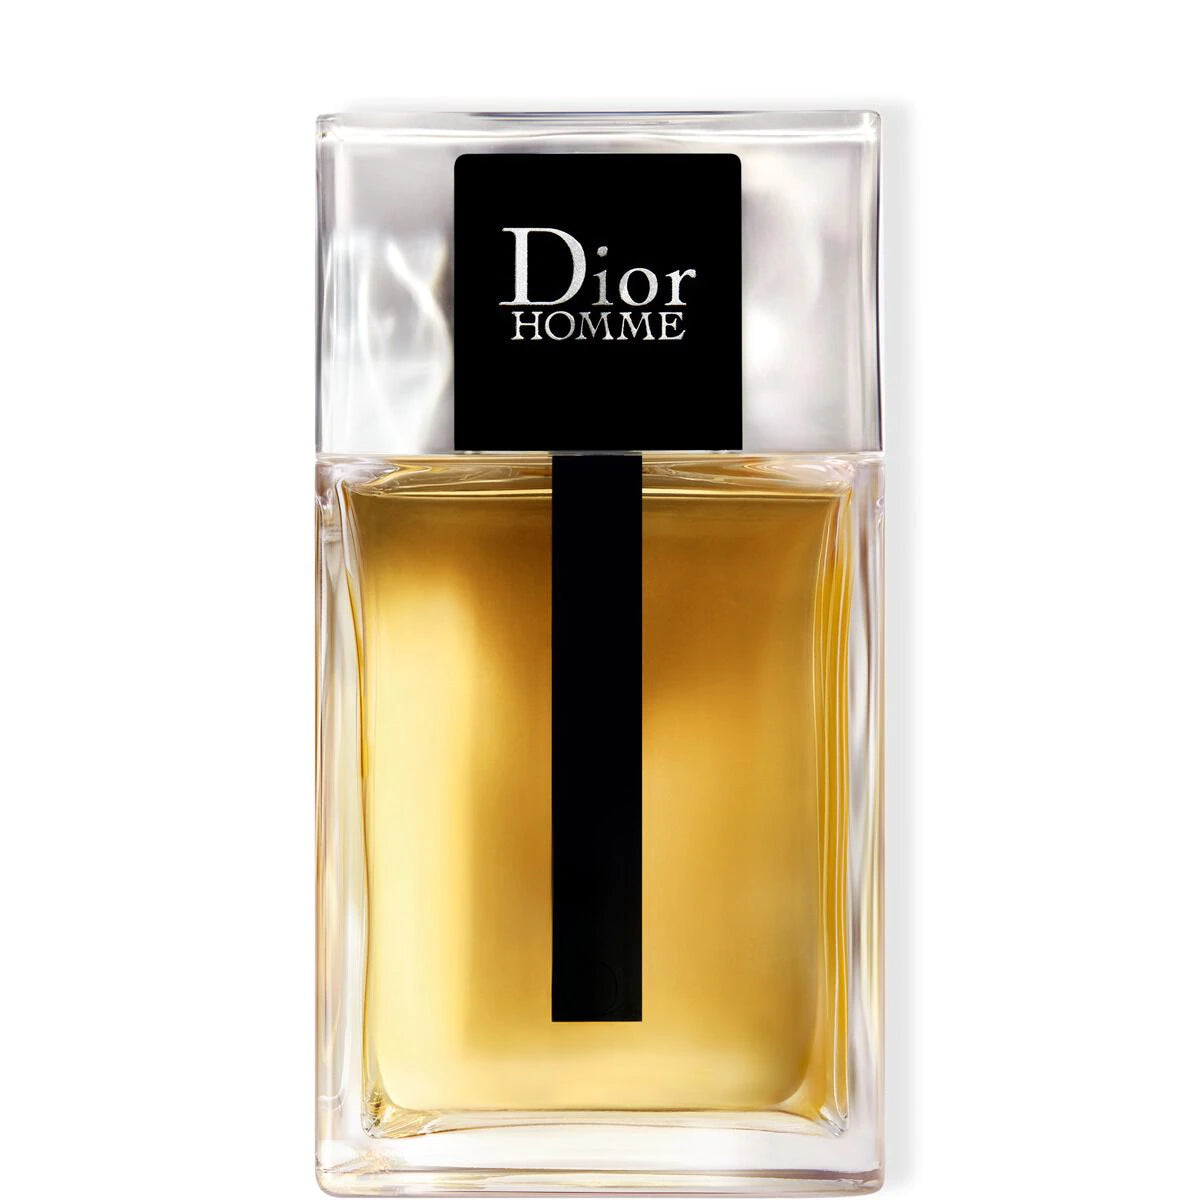 Christian Dior Homme Perfume Para Hombre 100ml Eau de Toilette